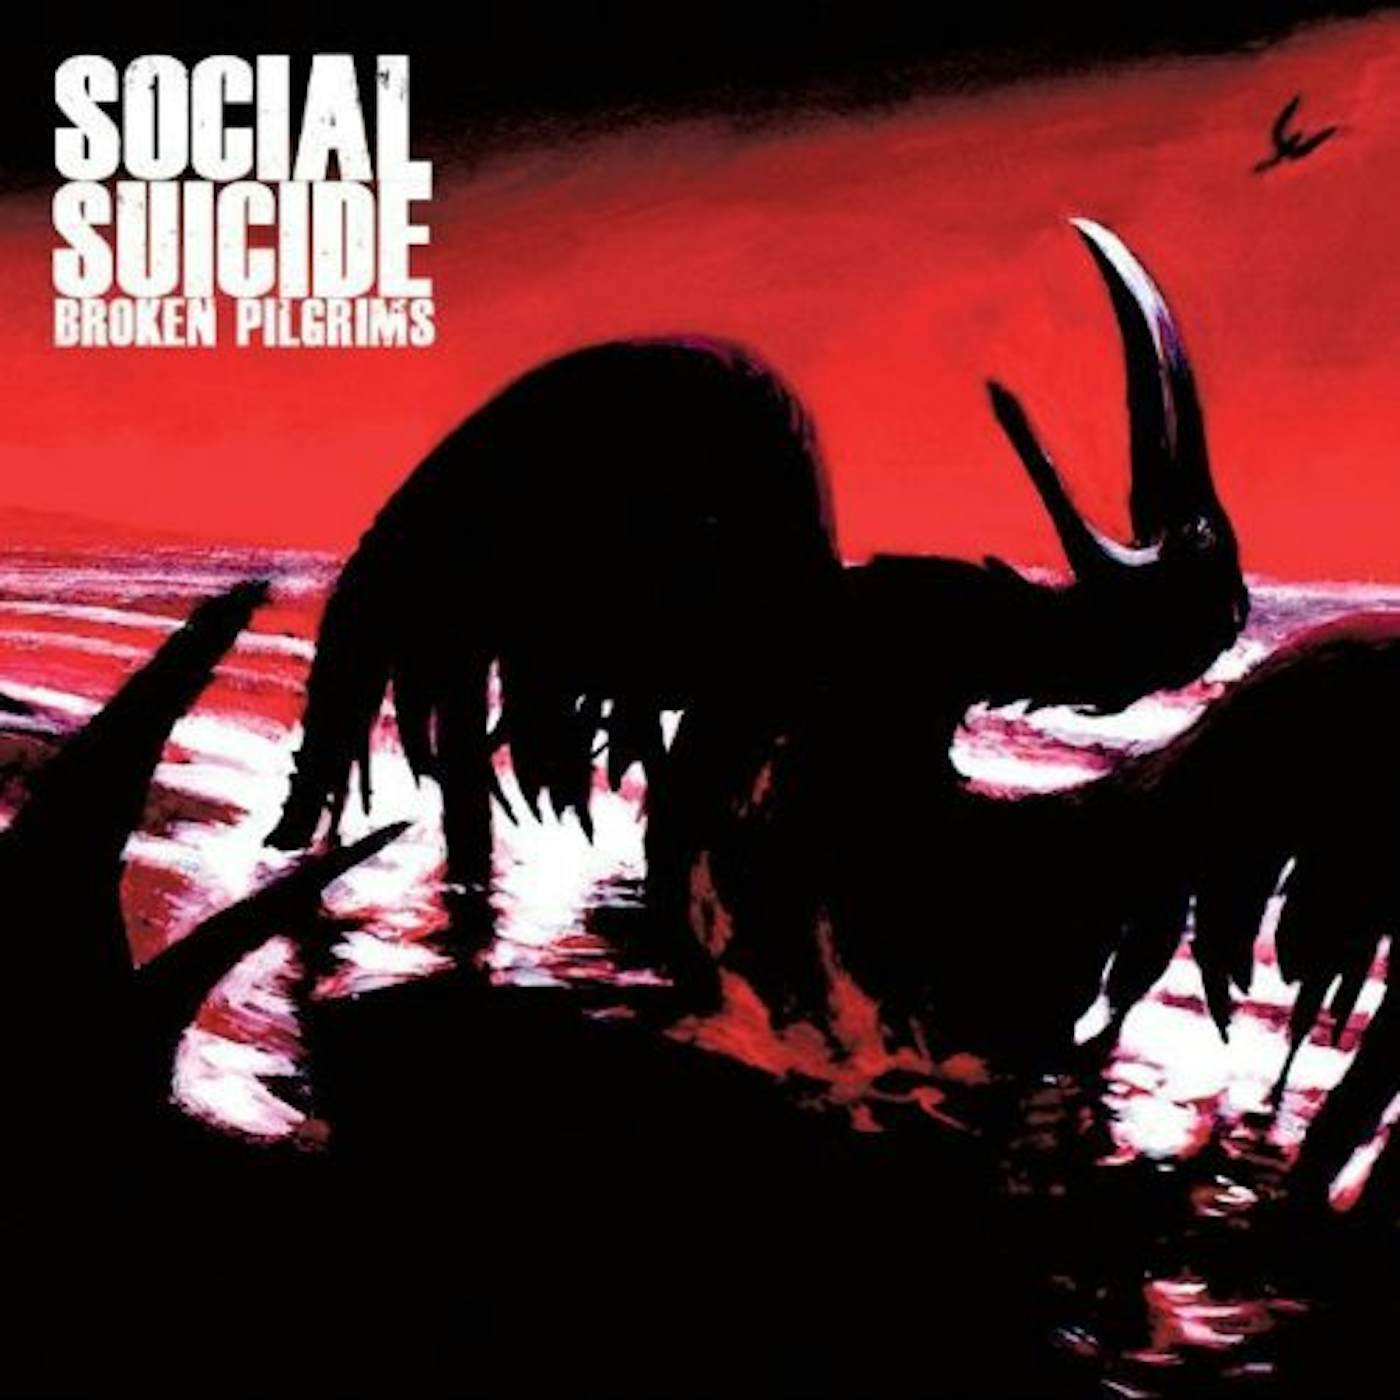 Social Suicide Broken Pilgrims Vinyl Record